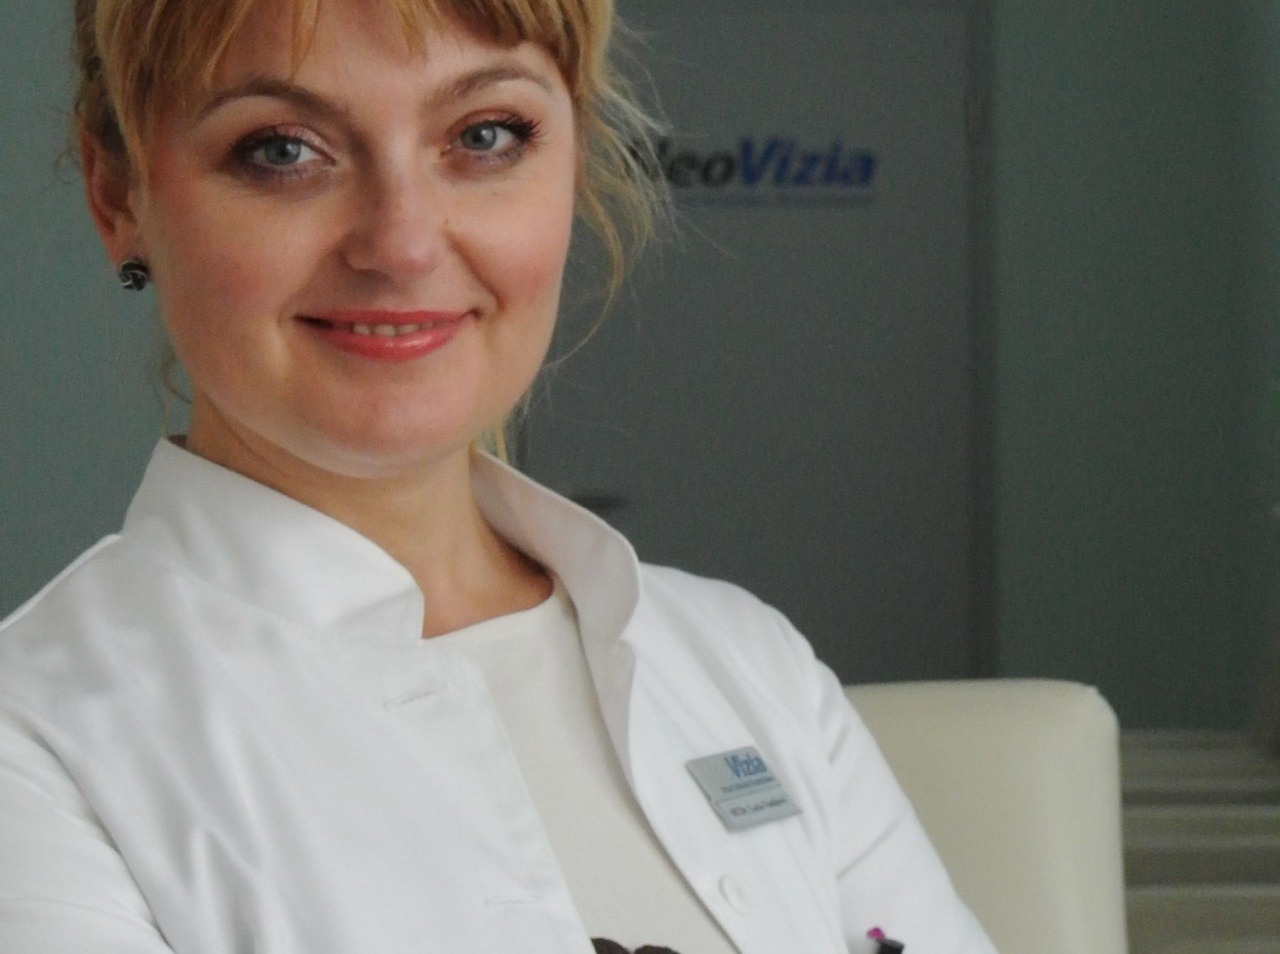 MUDr. Lucia Vaníková bude online 9. októbra 2014 od 11:00-12:00 v magazíne Vysetrenie.sk